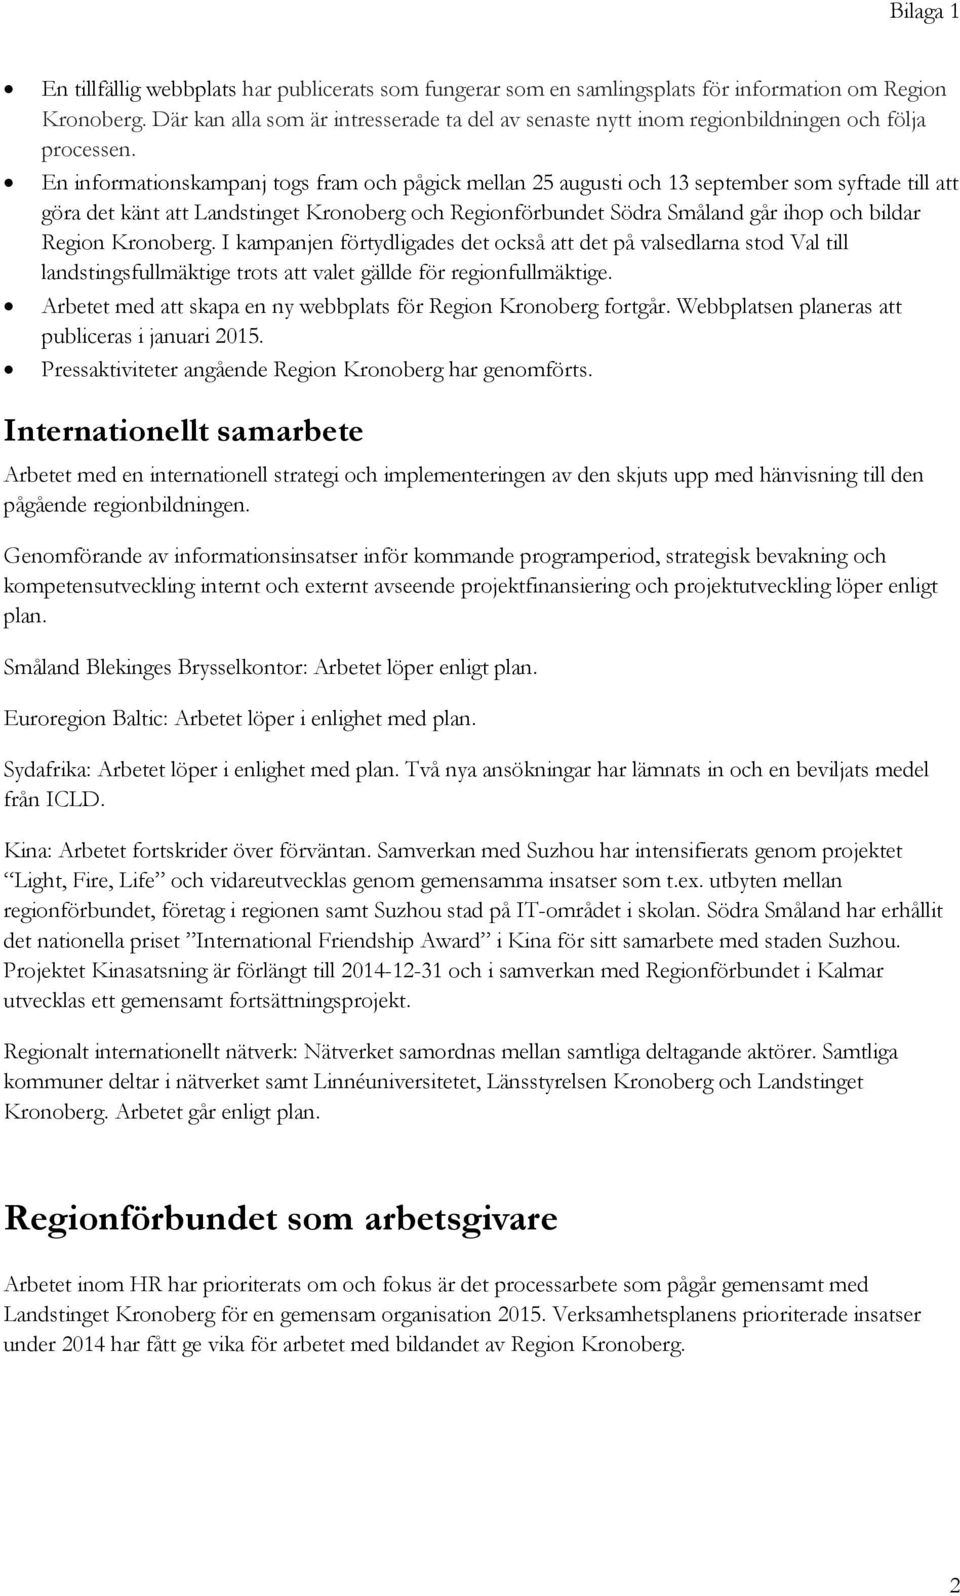 En informationskampanj togs fram och pågick mellan 25 augusti och 13 september som syftade till att göra det känt att Landstinget Kronoberg och Regionförbundet Södra Småland går ihop och bildar